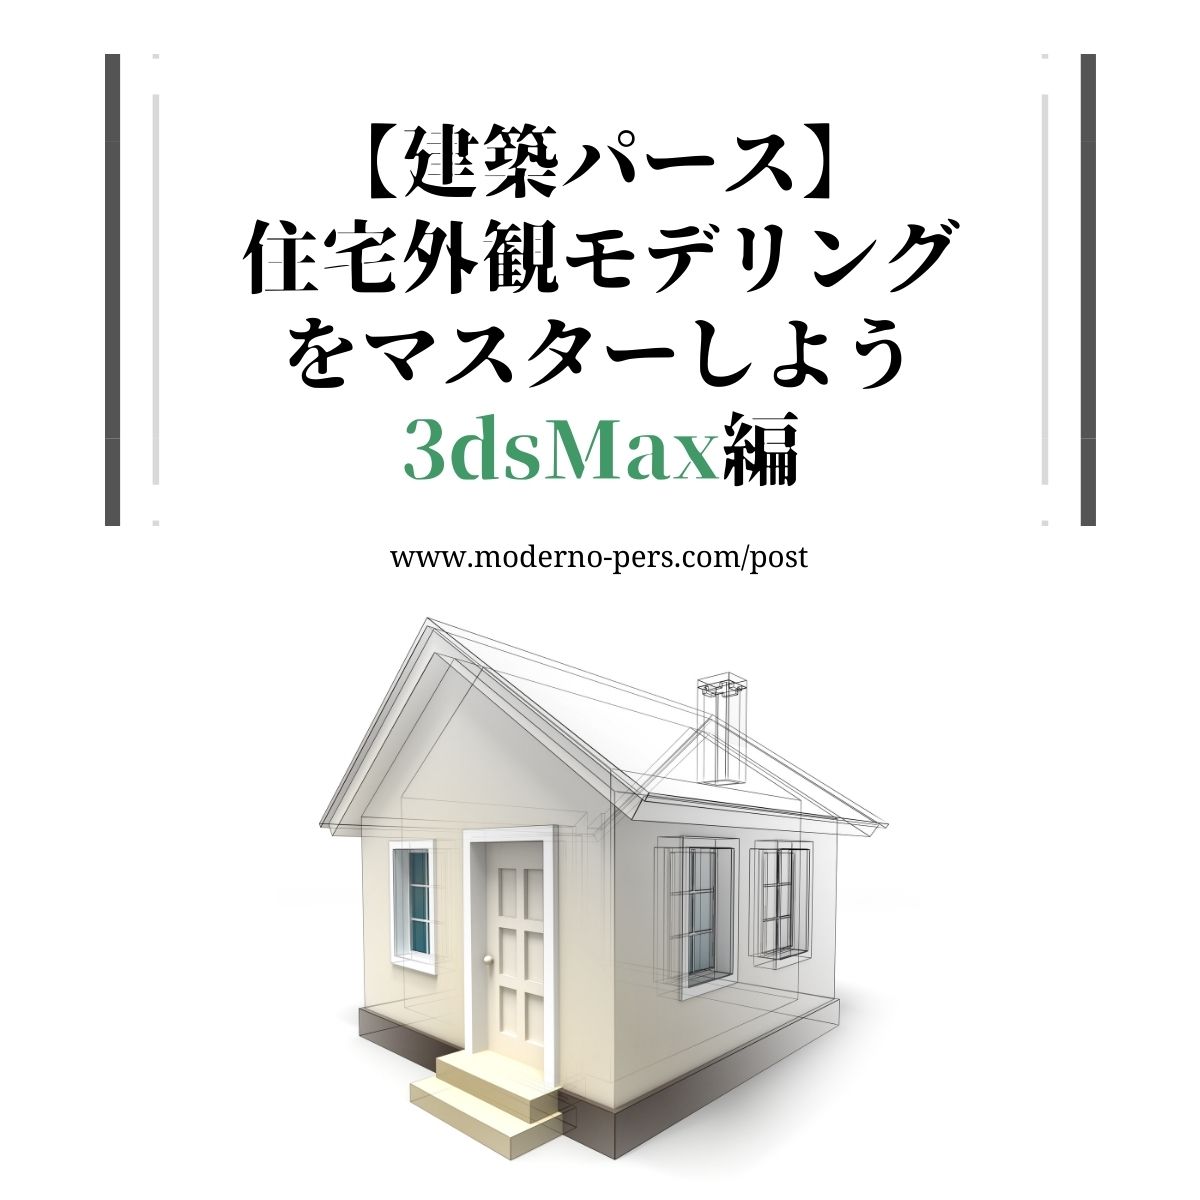 【建築パース】住宅外観モデリングをマスターしよう 3dsMax編